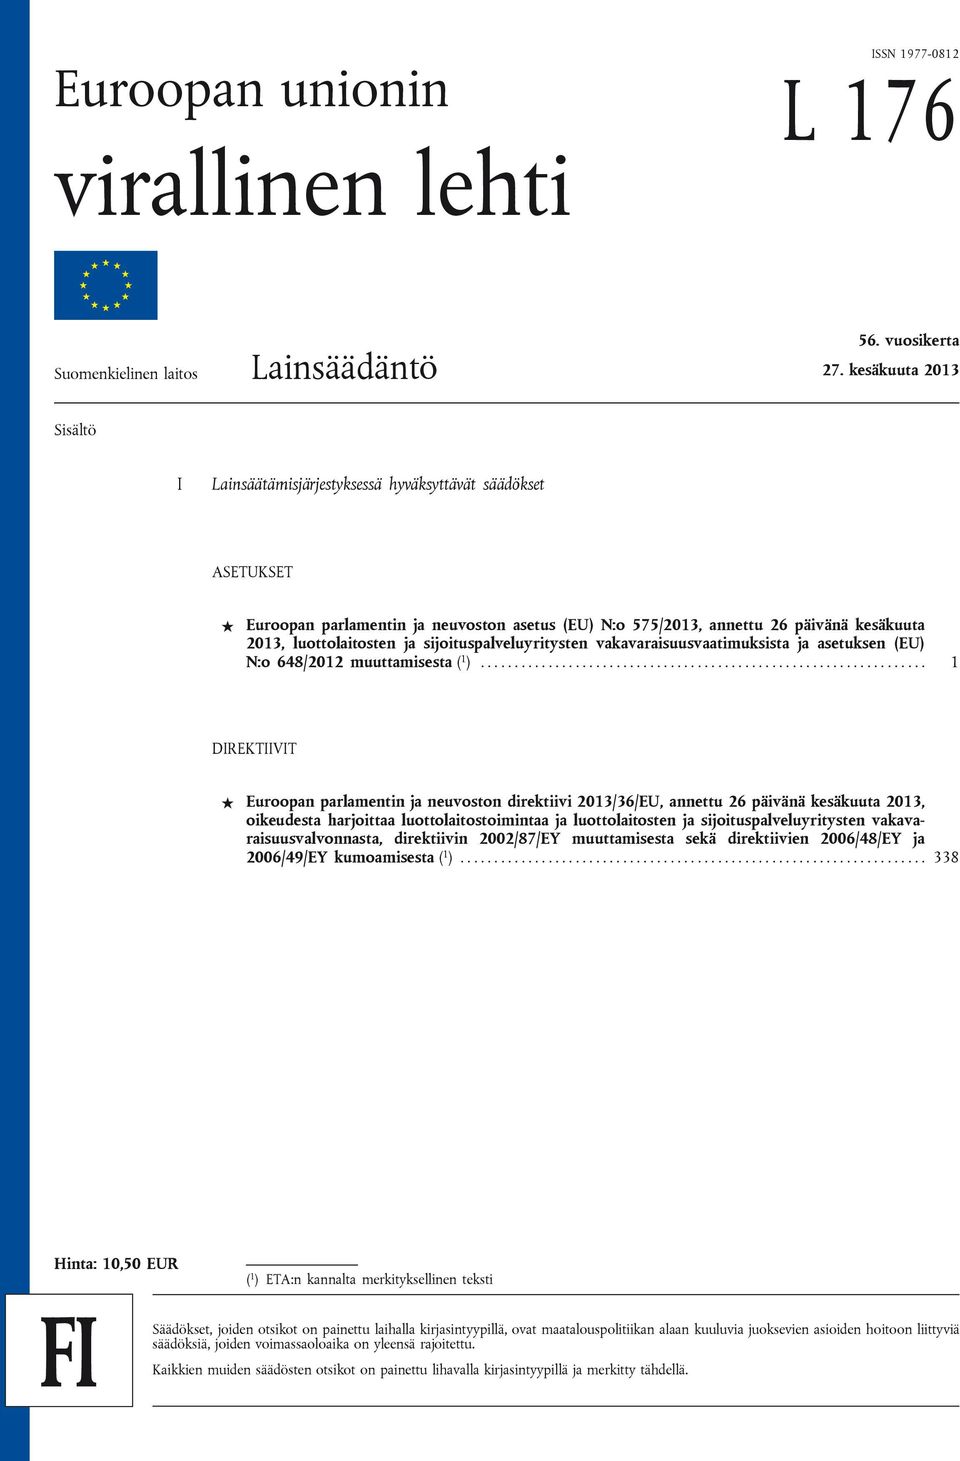 sijoituspalveluyritysten vakavaraisuusvaatimuksista ja asetuksen (EU) N:o 648/2012 muuttamisesta ( 1 ).